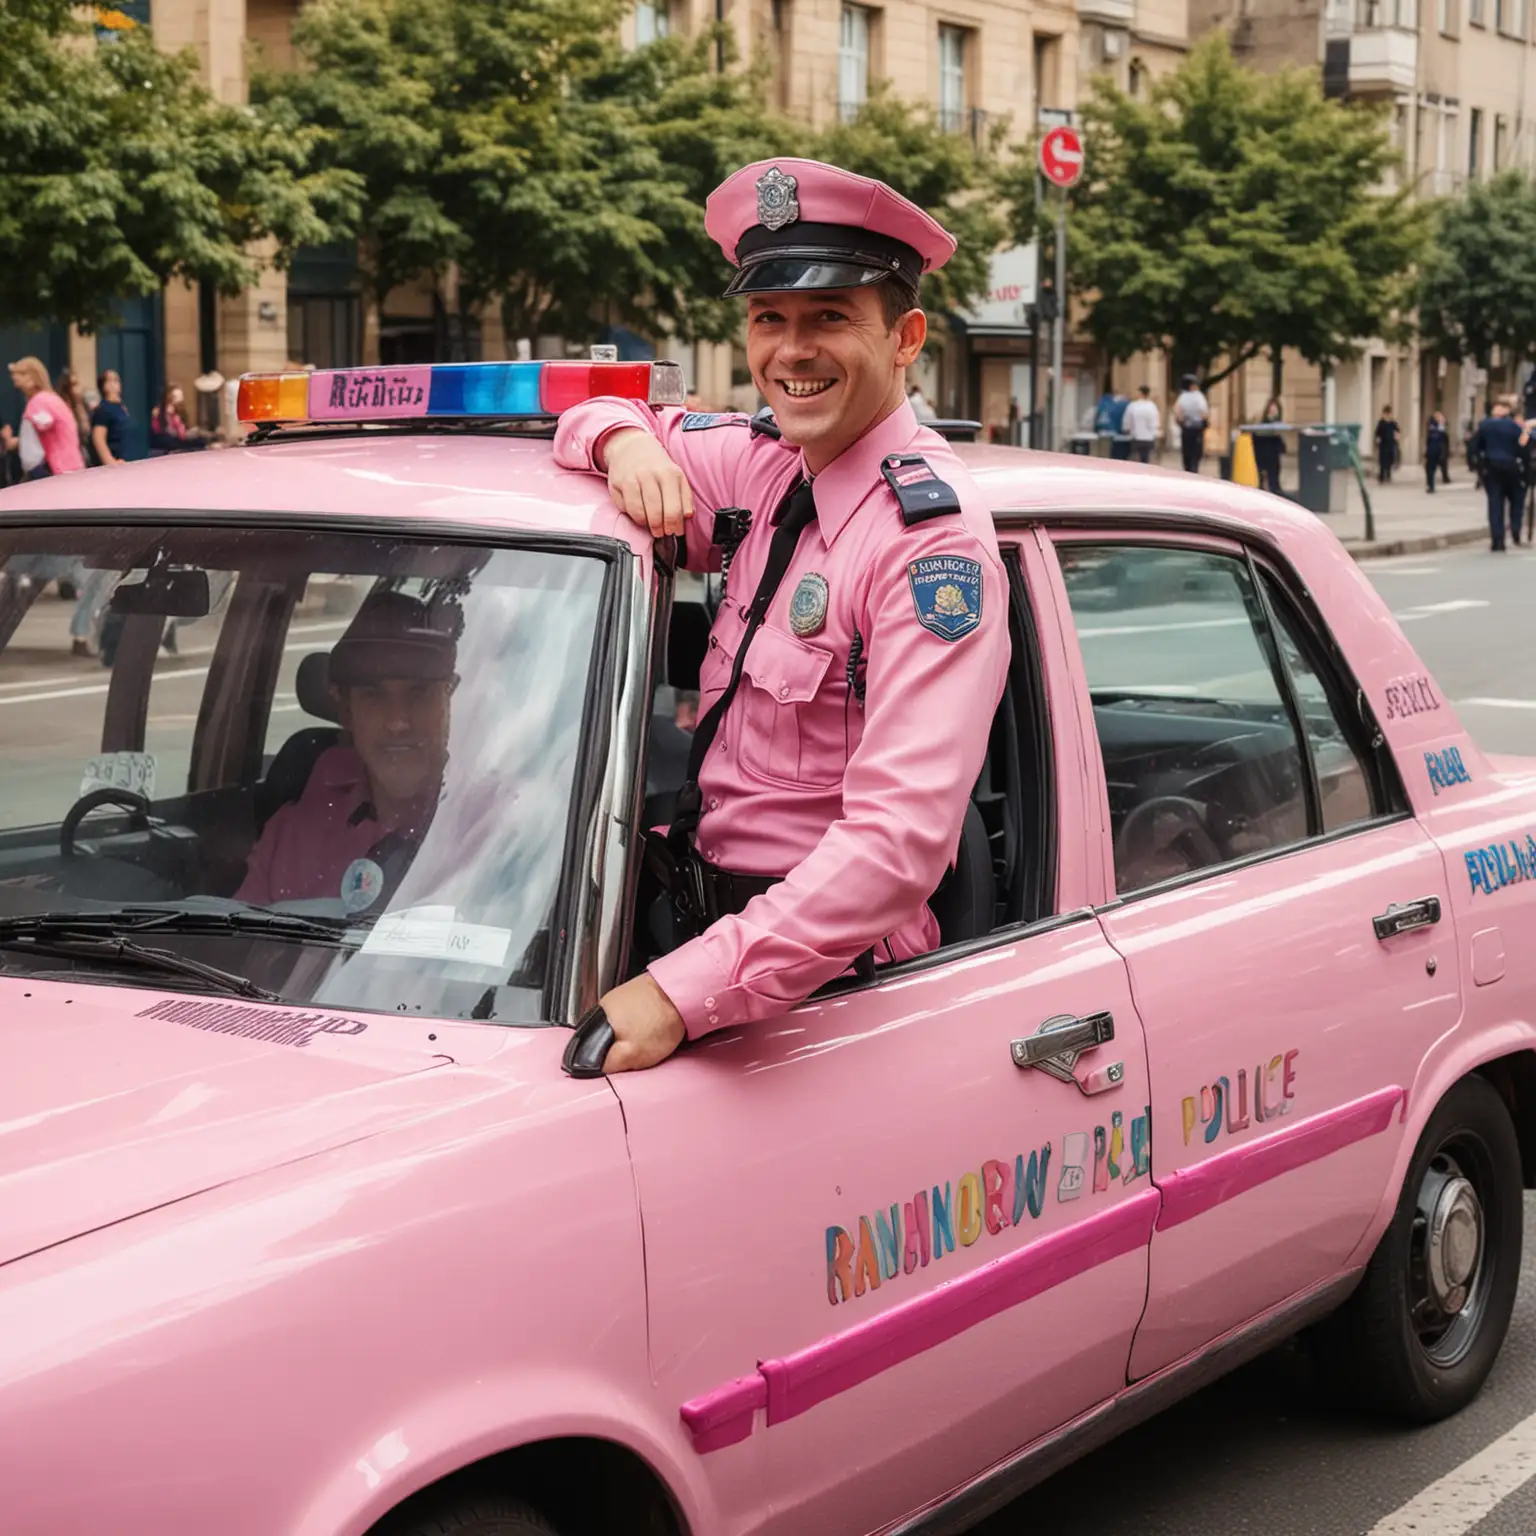 w tęczowym samochodzie policyjnym siedzi policjant ubrany w różowy mundur, atmosfera radości